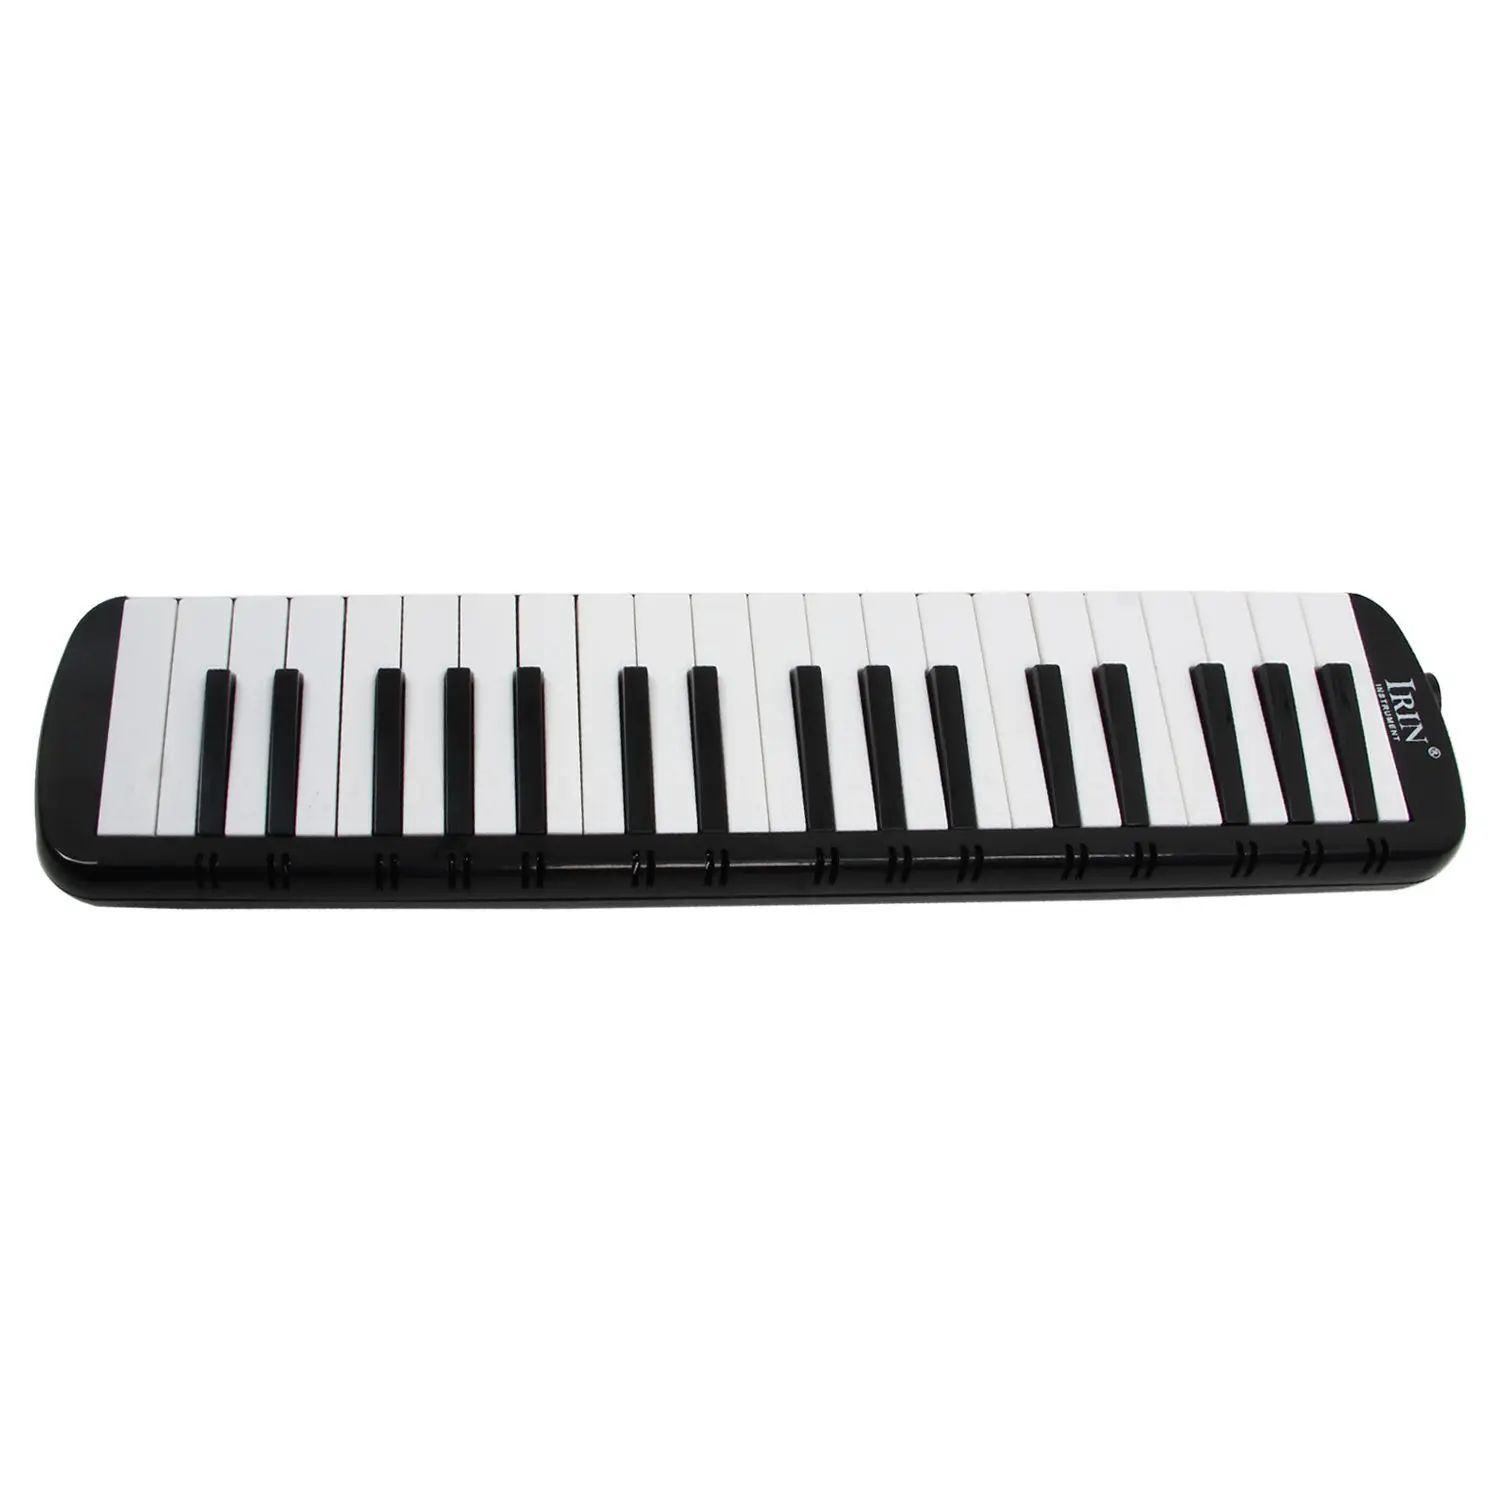 XFDZ ИРИН черный 37 фортепиано ключи melodica Pianica w/сумка для студентов